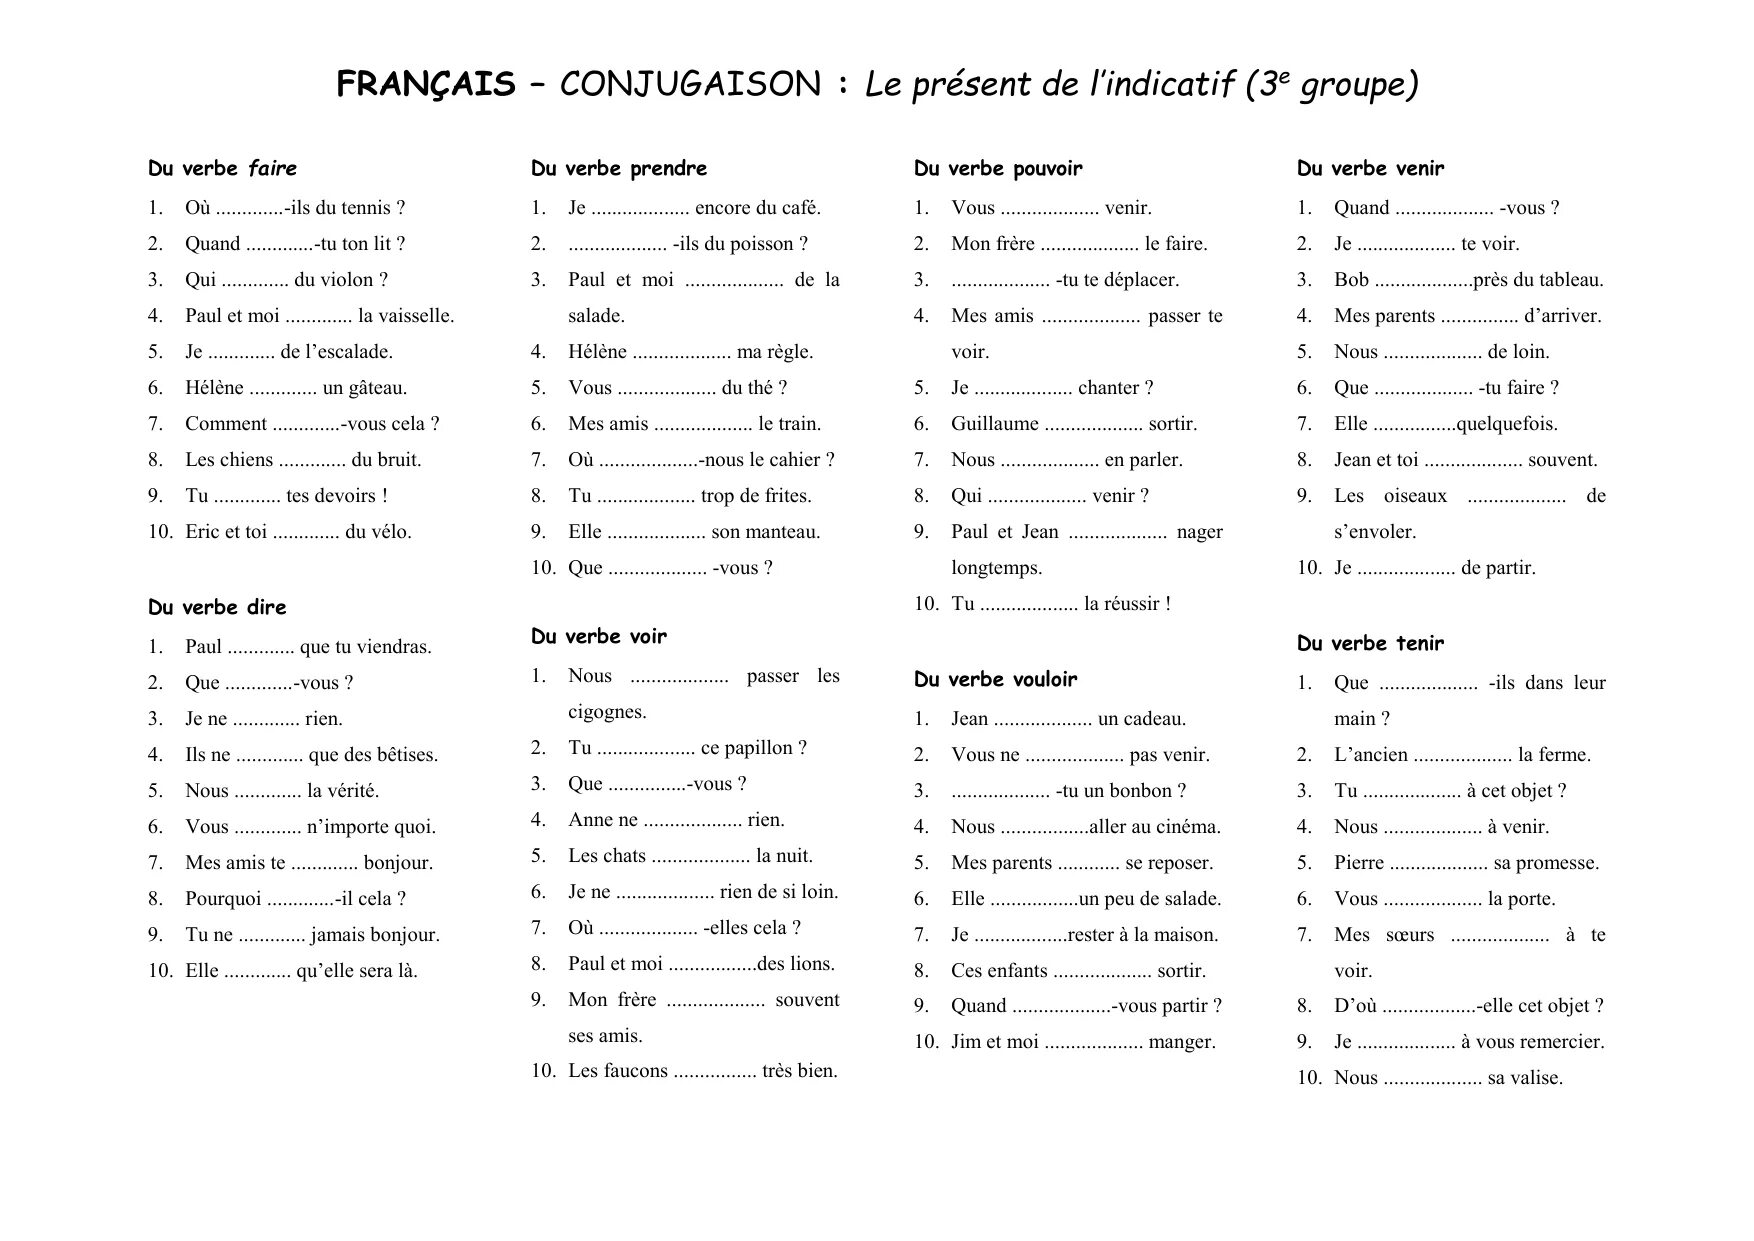 Present de l'indicatif во французском языке exercises. Present de l'indicatif во французском языке. Present французский упражнения. Present во французском языке упражнения. Упражнение французские глаголы